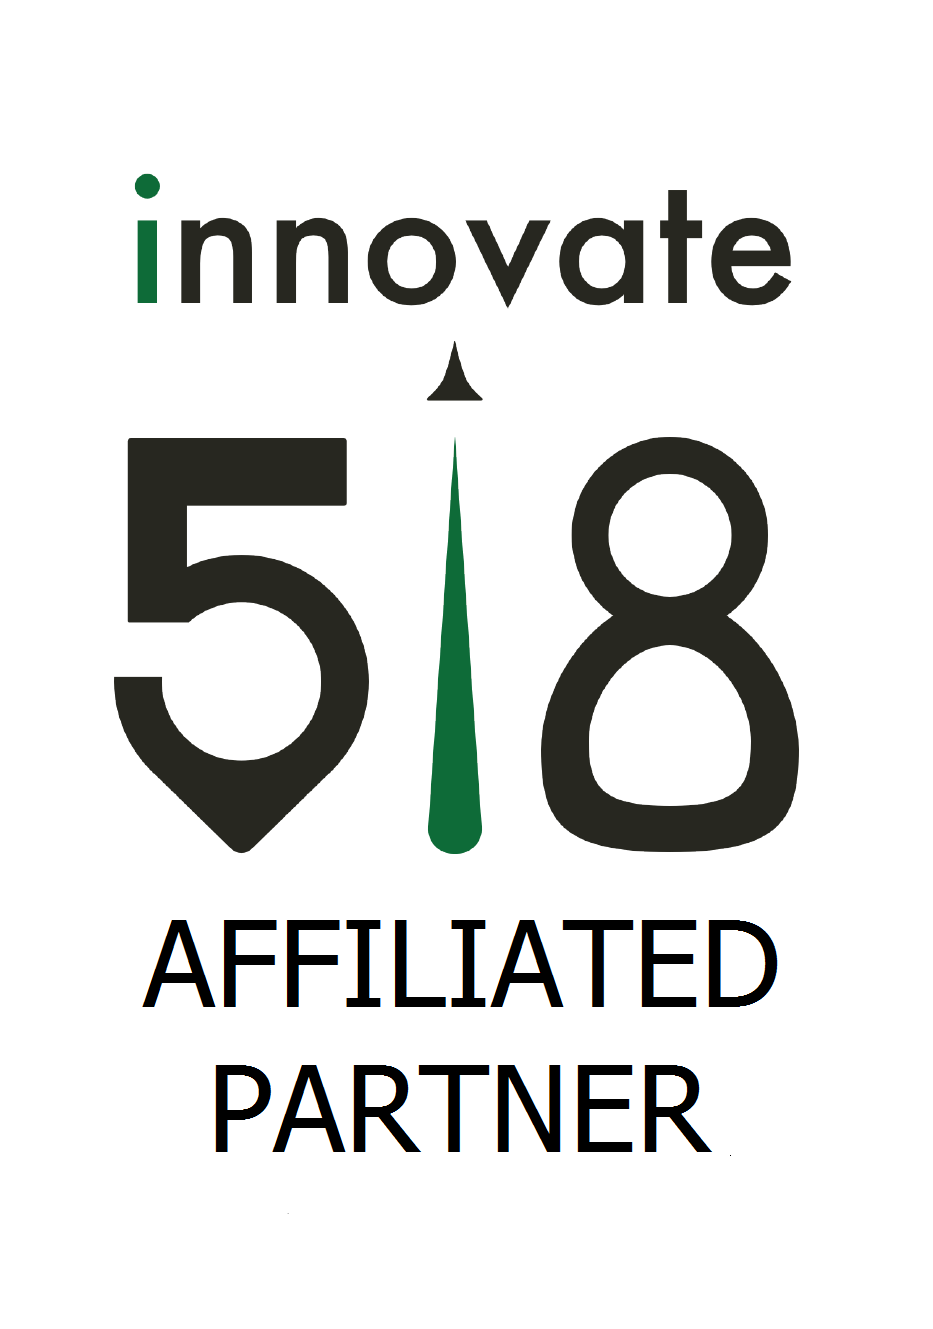 Innovate518 Partner logo